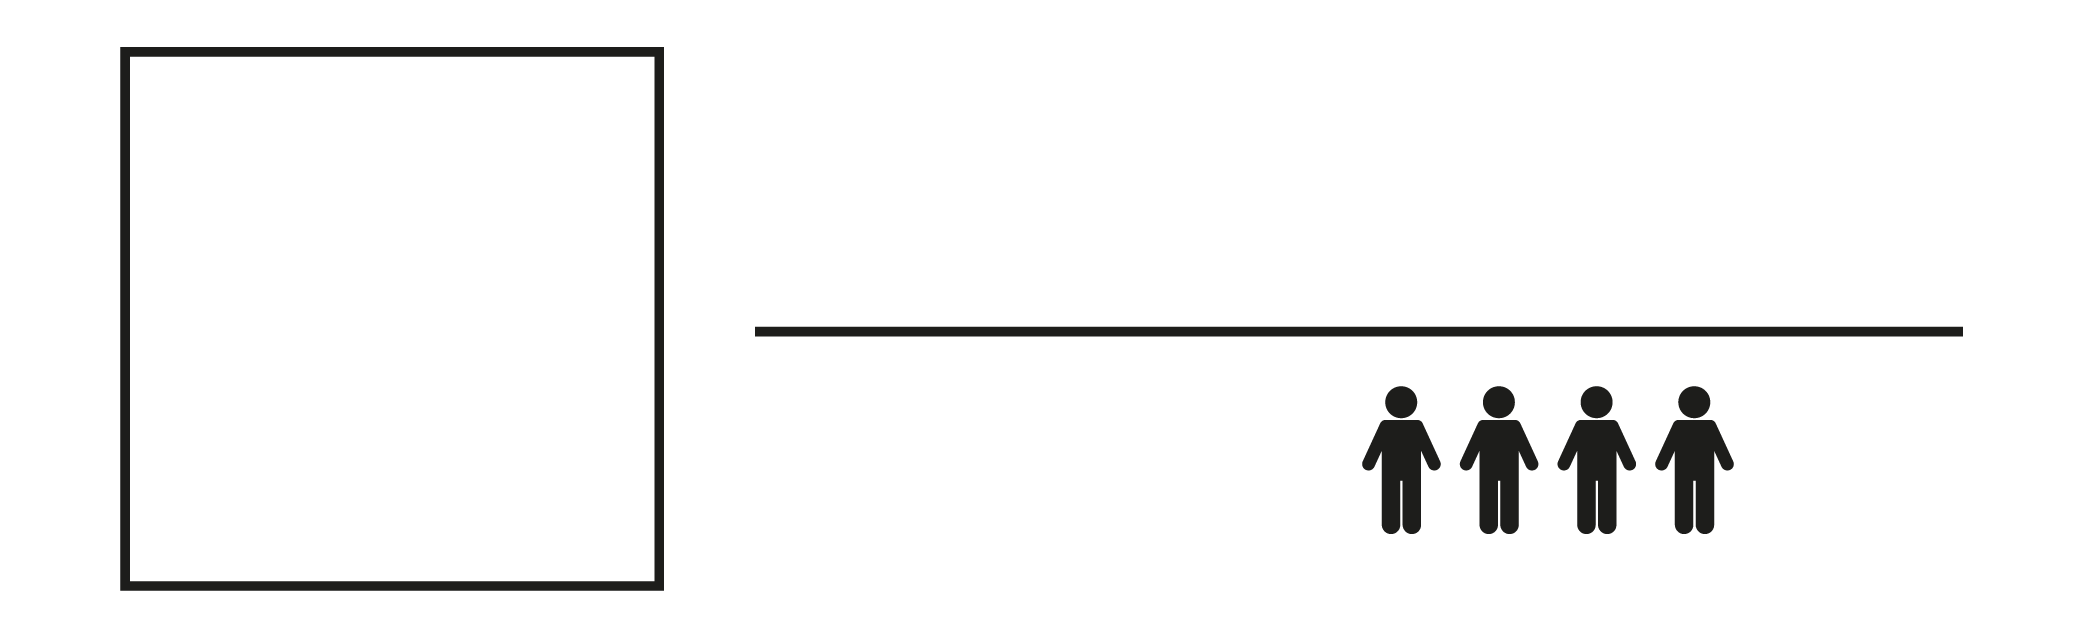 Swiss Art Agency